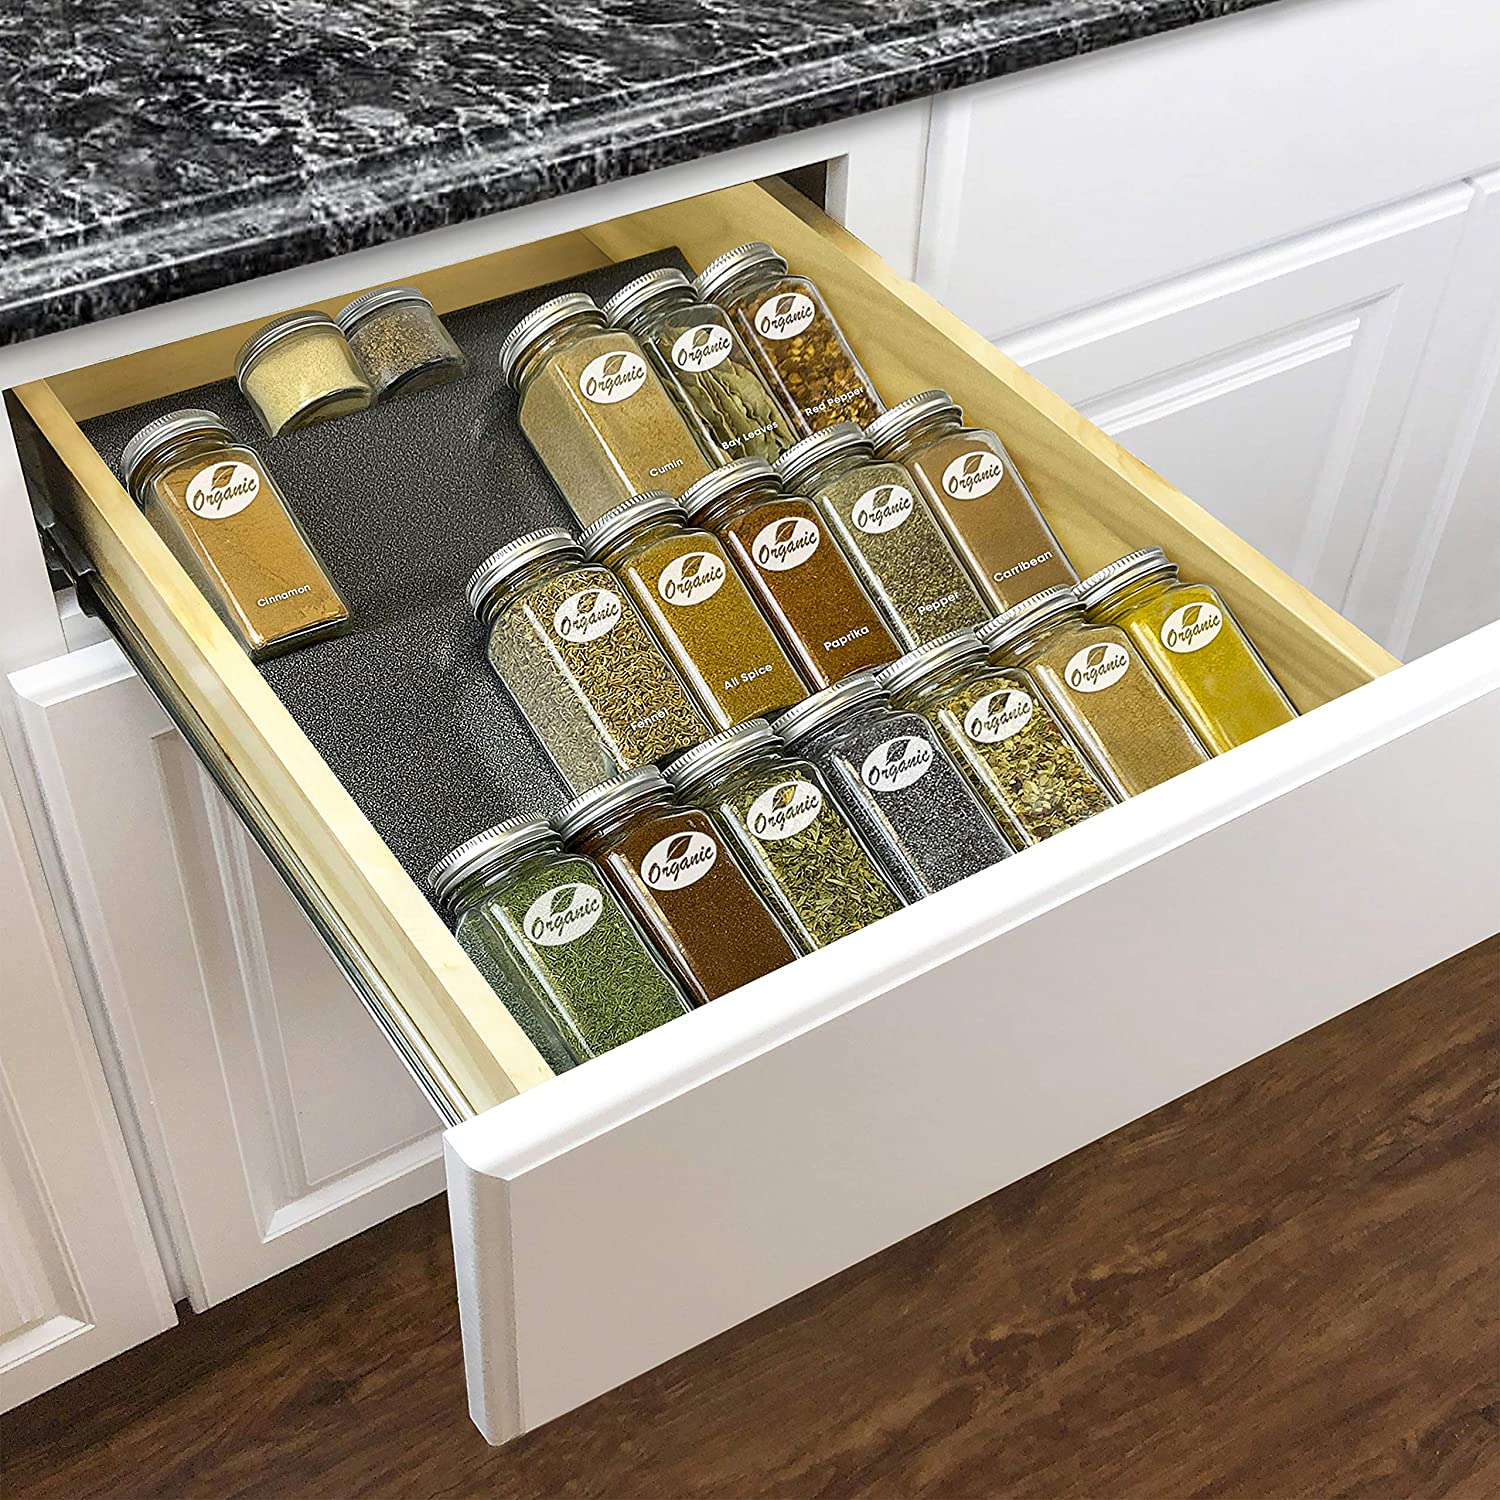 5 phụ kiện lưu trữ cho nhà bếp cần thiết để có không gian gọn gàng và ngăn nắp - Ảnh 12.